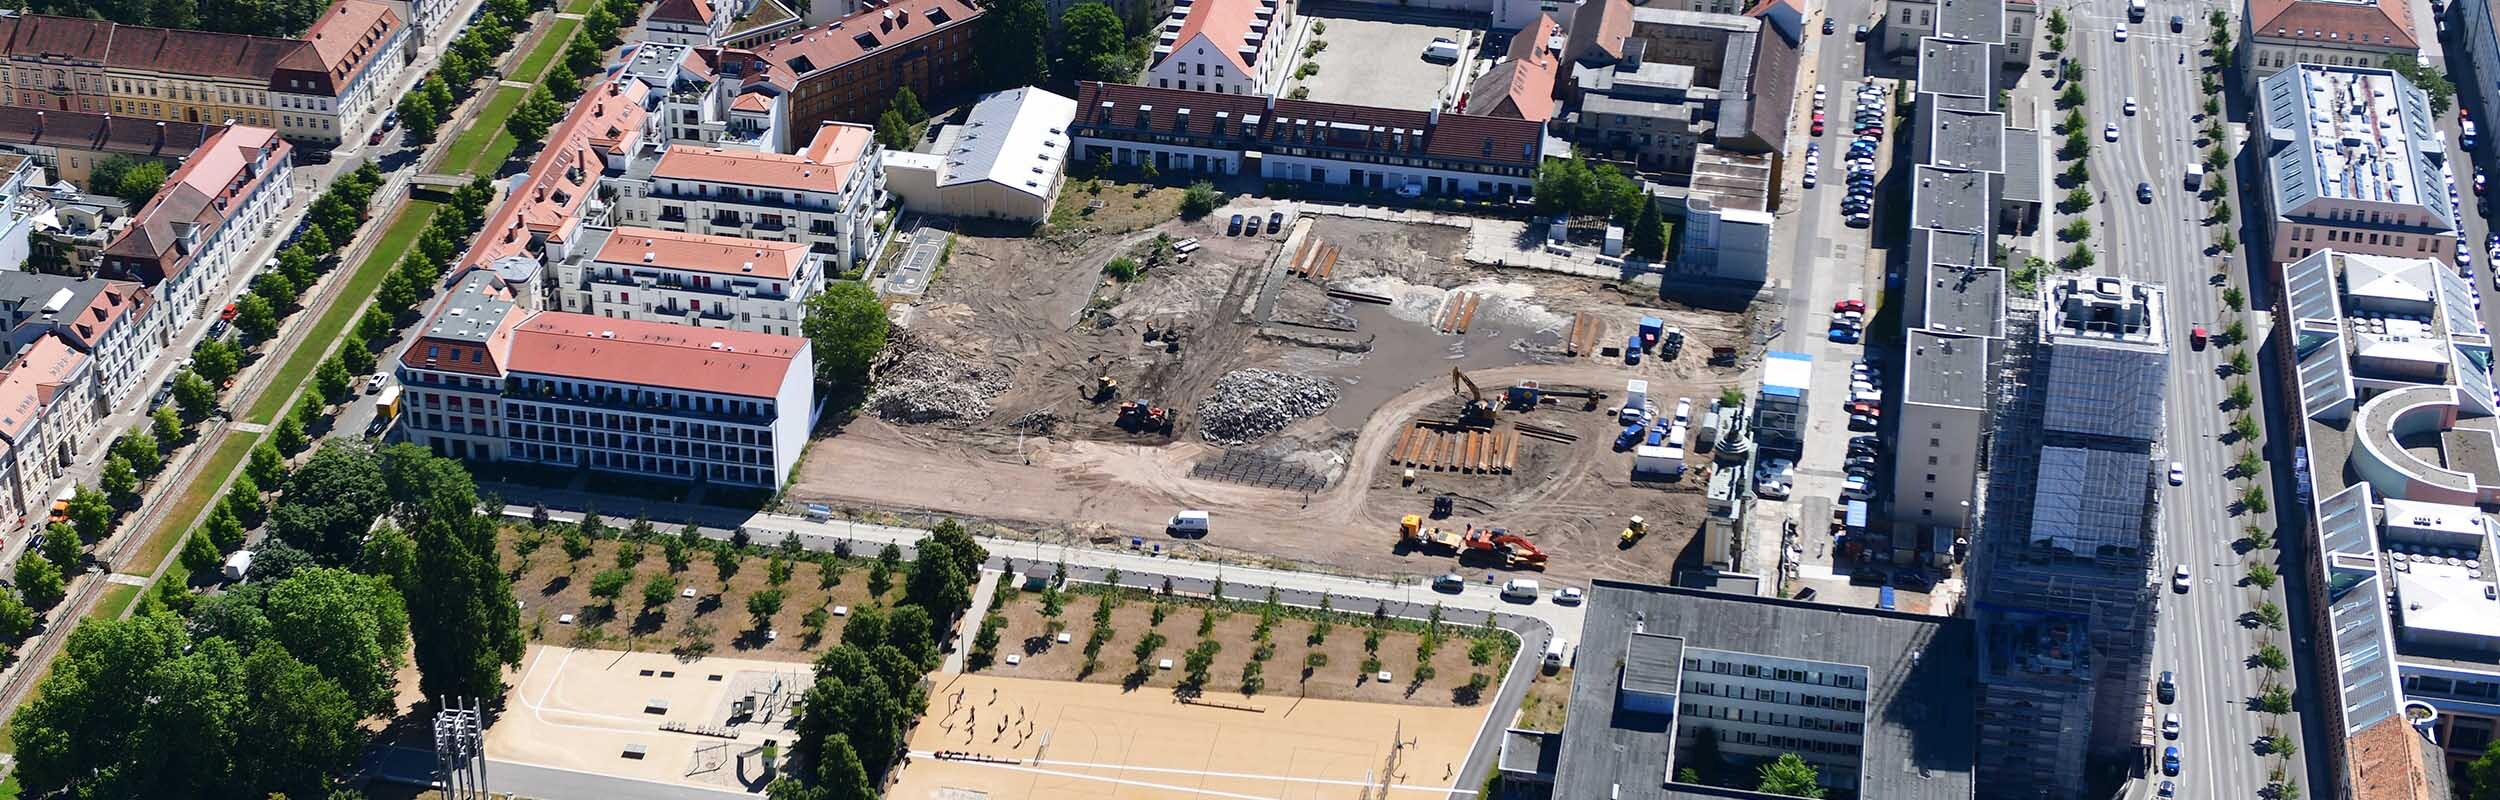 Foto: Luftaufnahme der Bauarbeiten auf dem Gelände der ehemaligen Feuerwache.